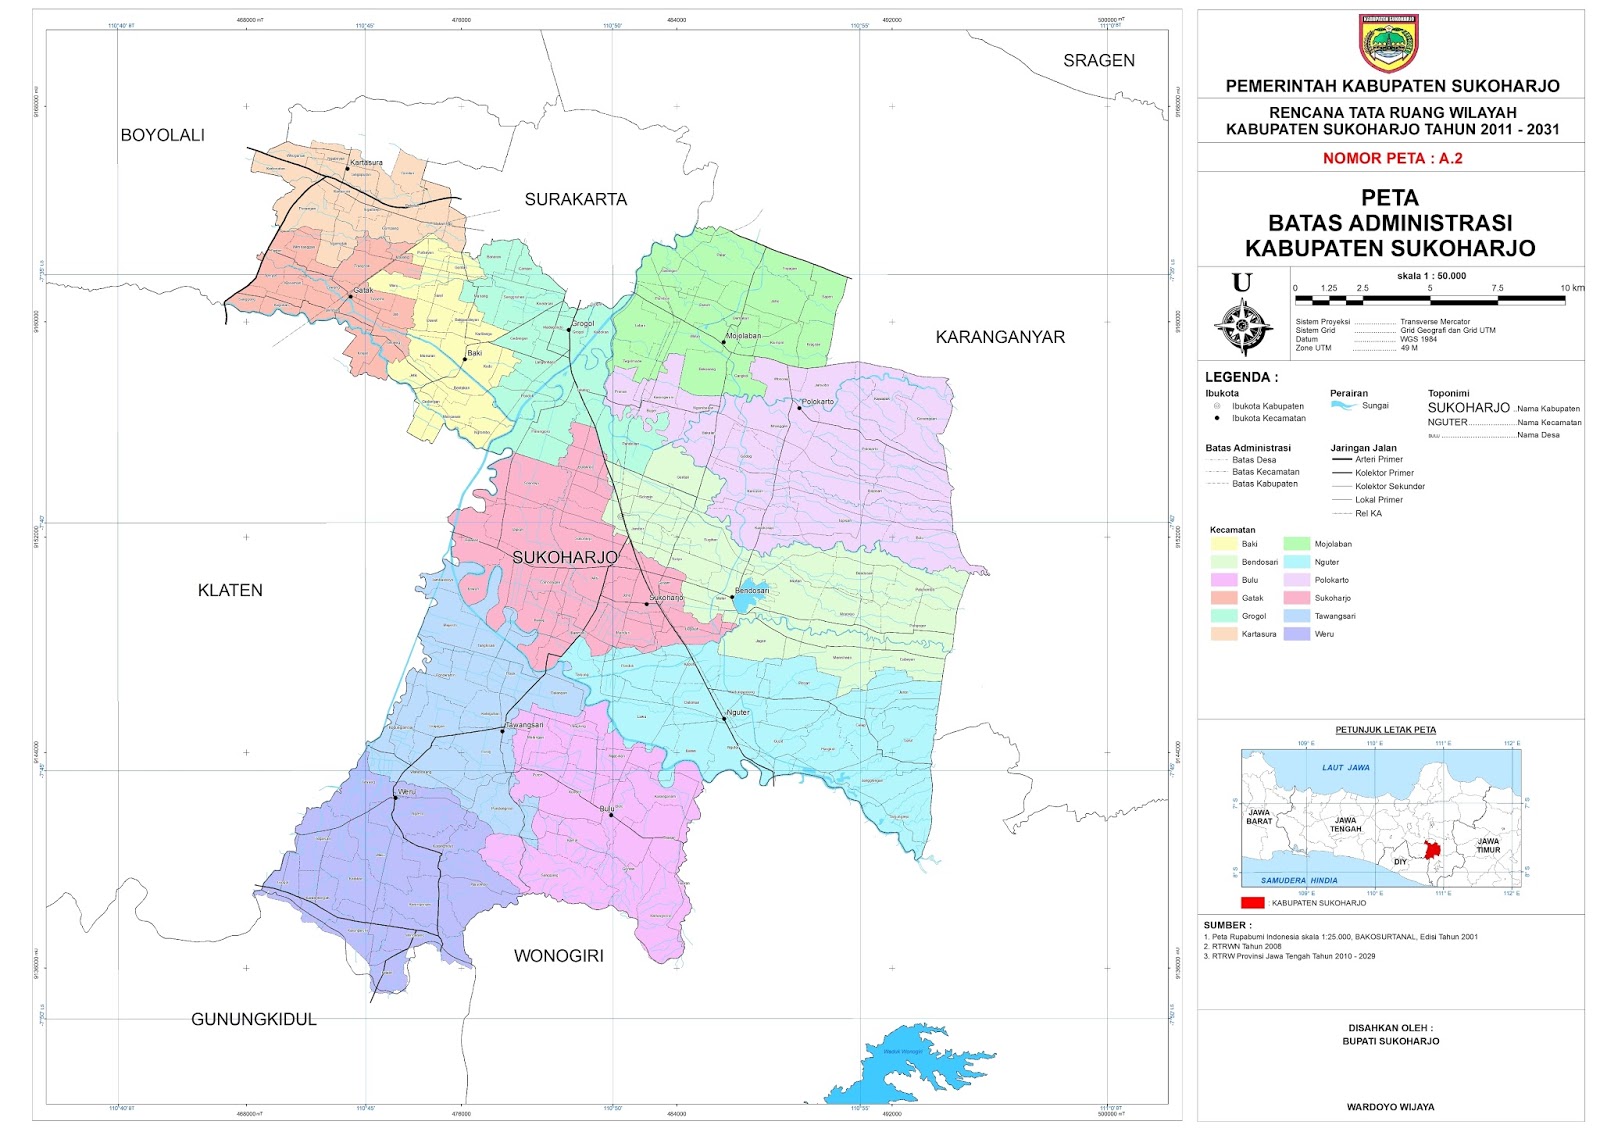  Peta  Kota Peta  Kabupaten Sukoharjo 